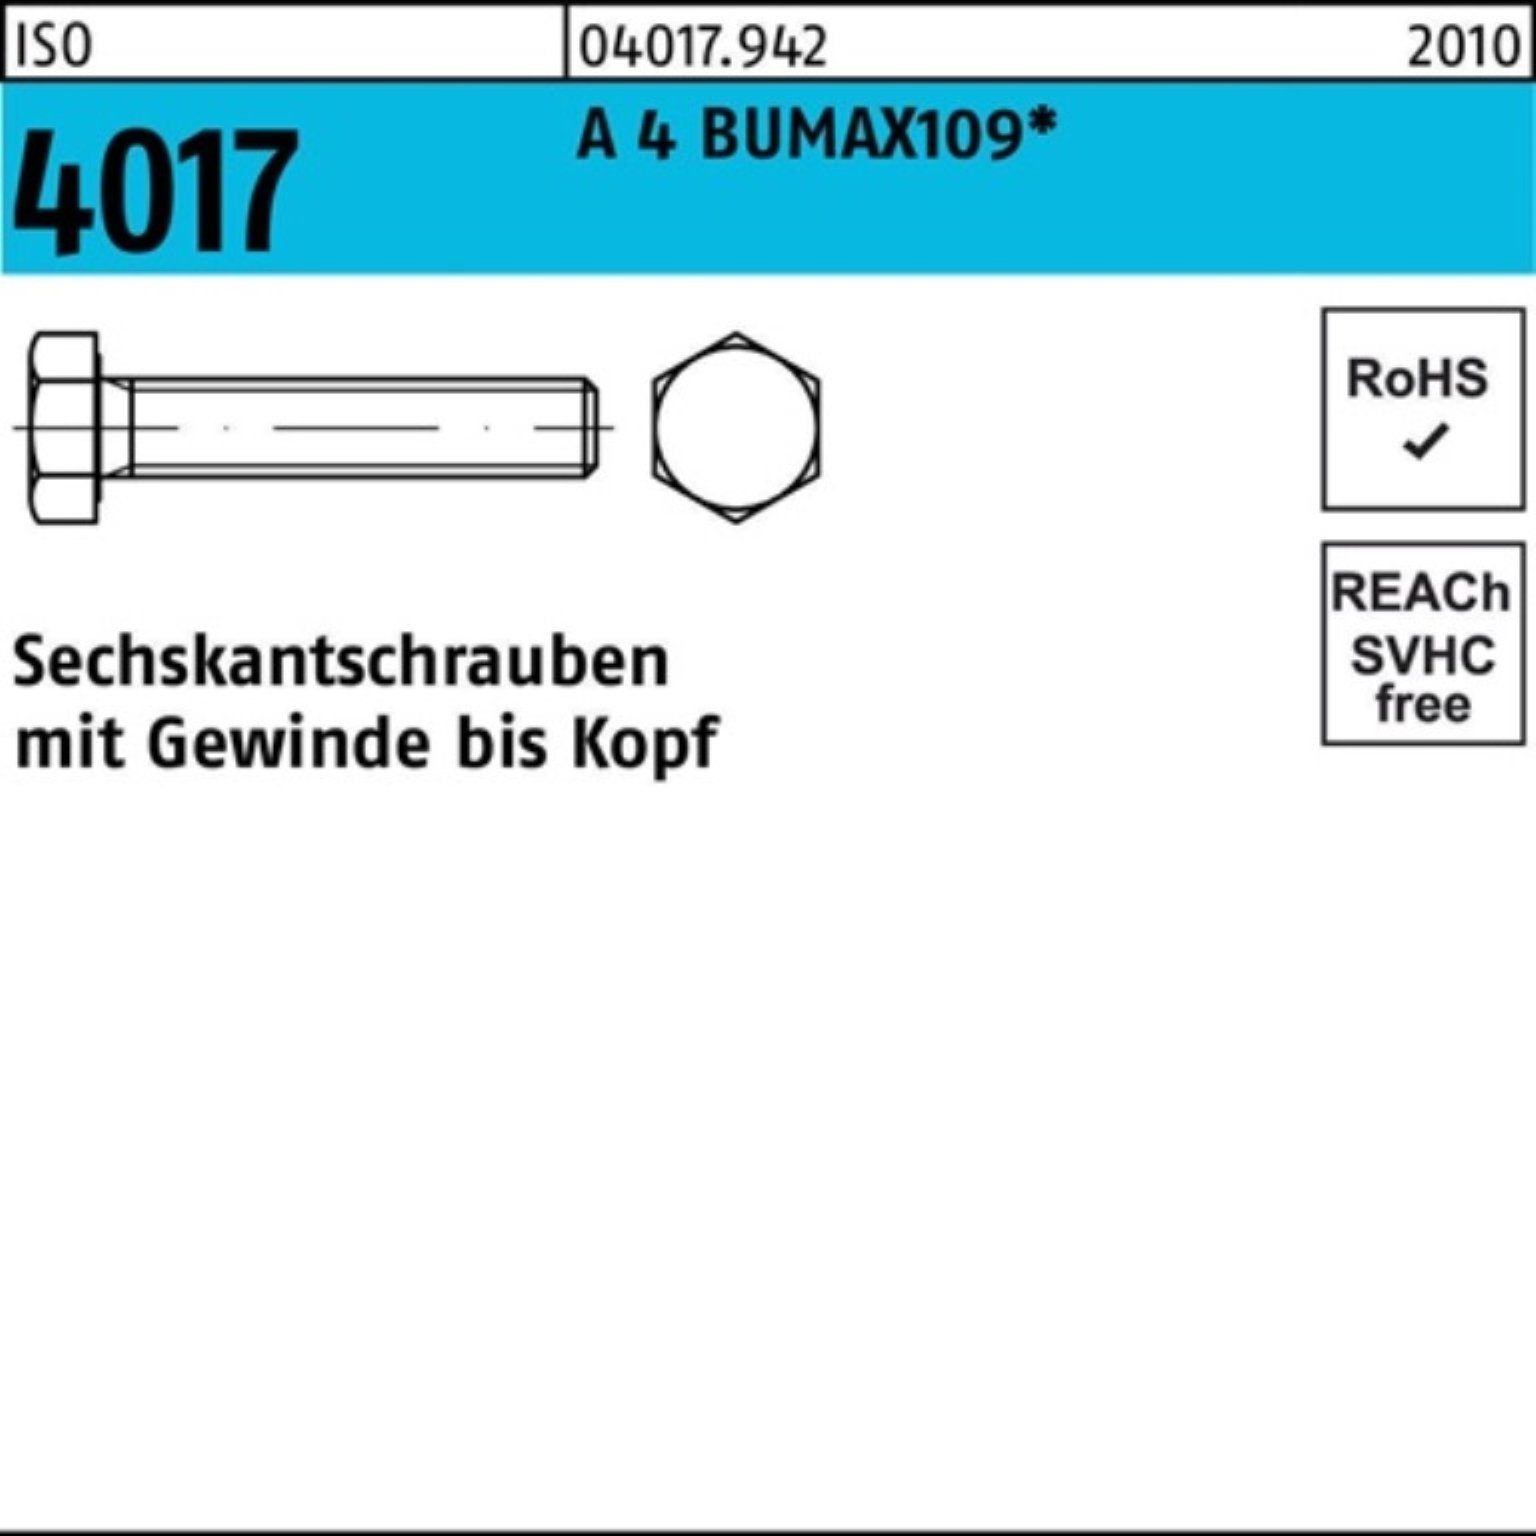 Bufab Sechskantschraube 100er Pack Sechskantschraube ISO 4017 VG M10x 40 A 4 BUMAX109 50 Stüc